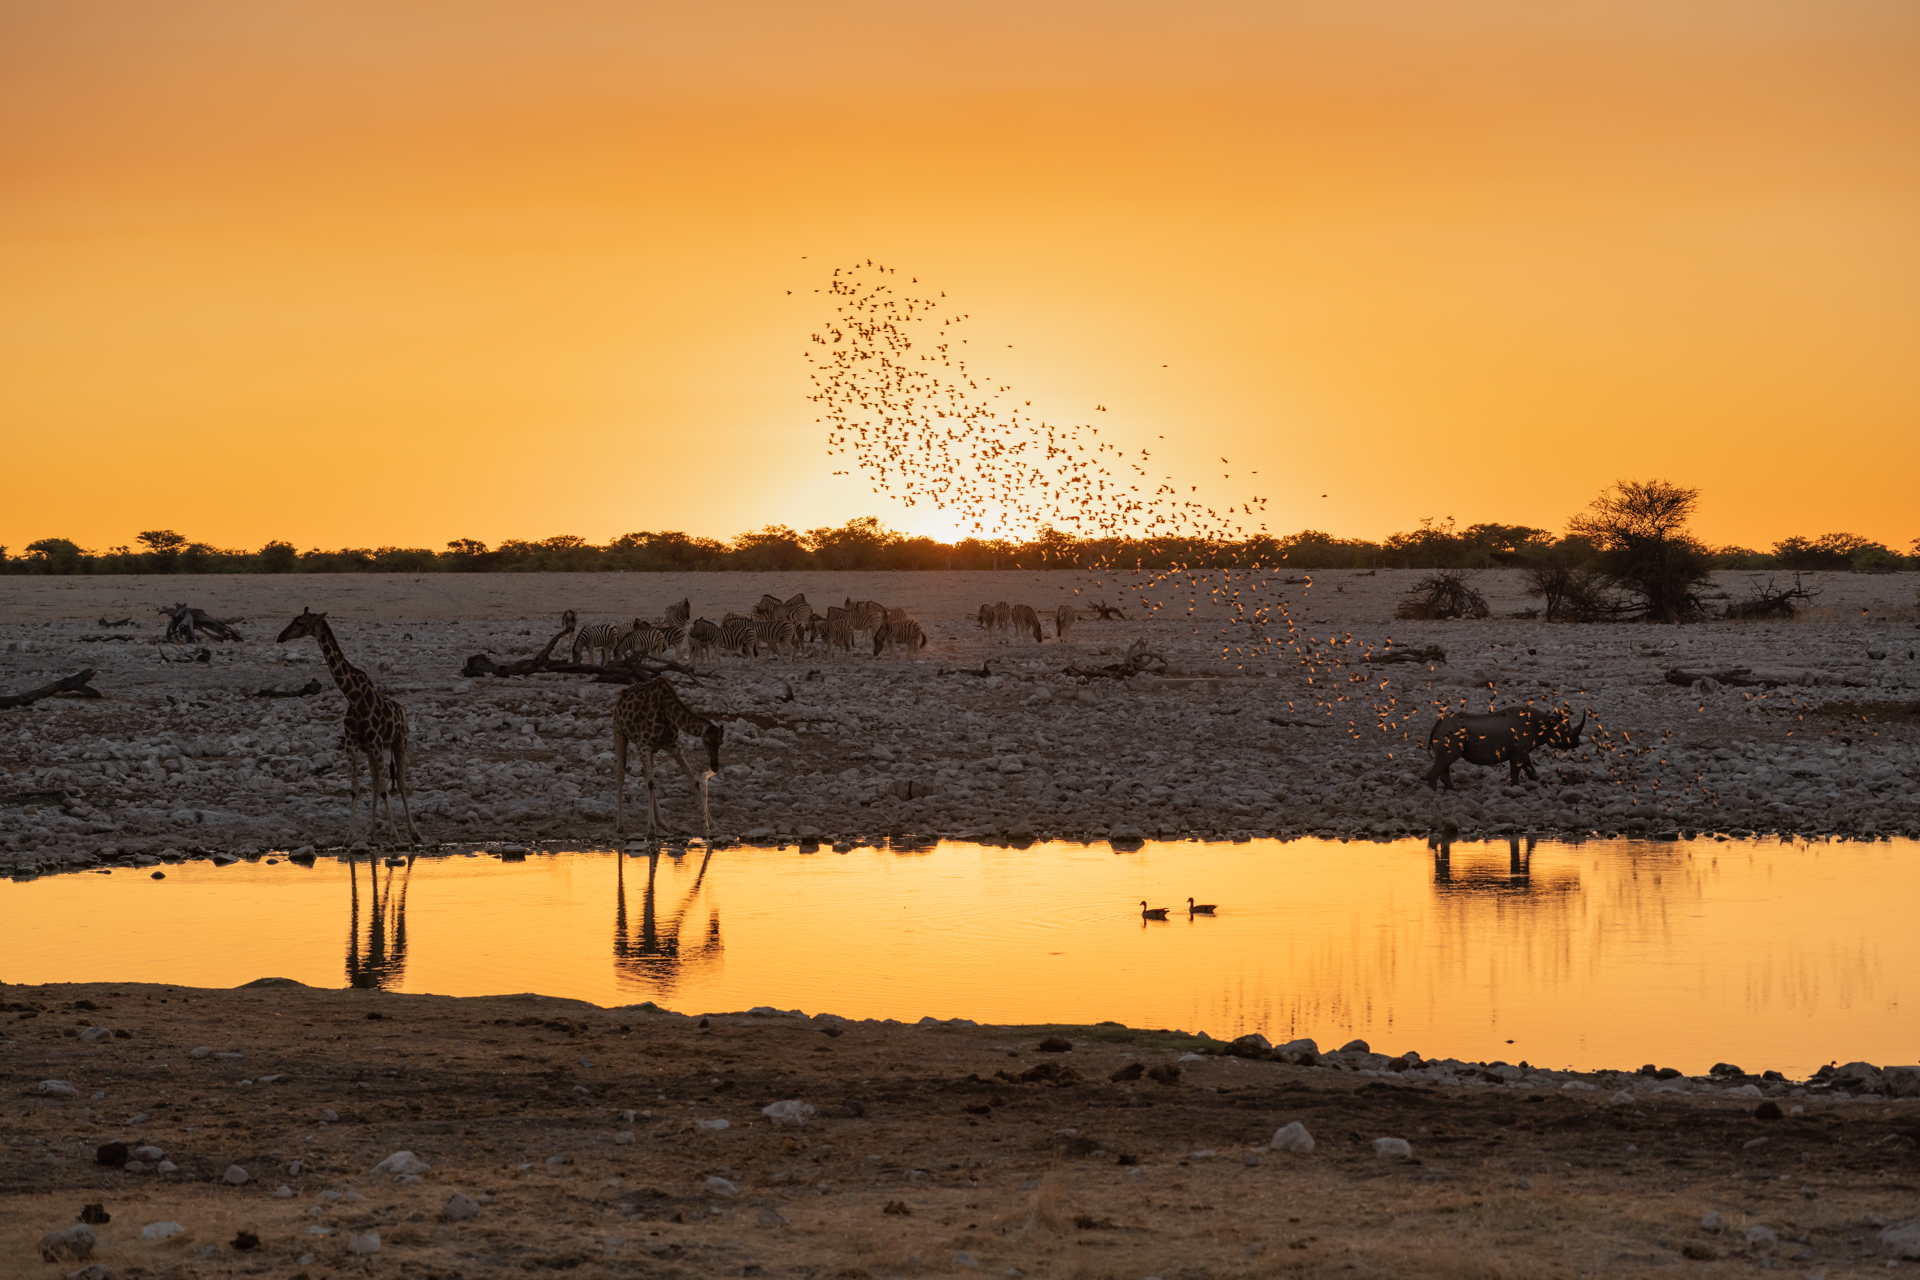 Tiere am Wasserloch in Namibia / Etoscha